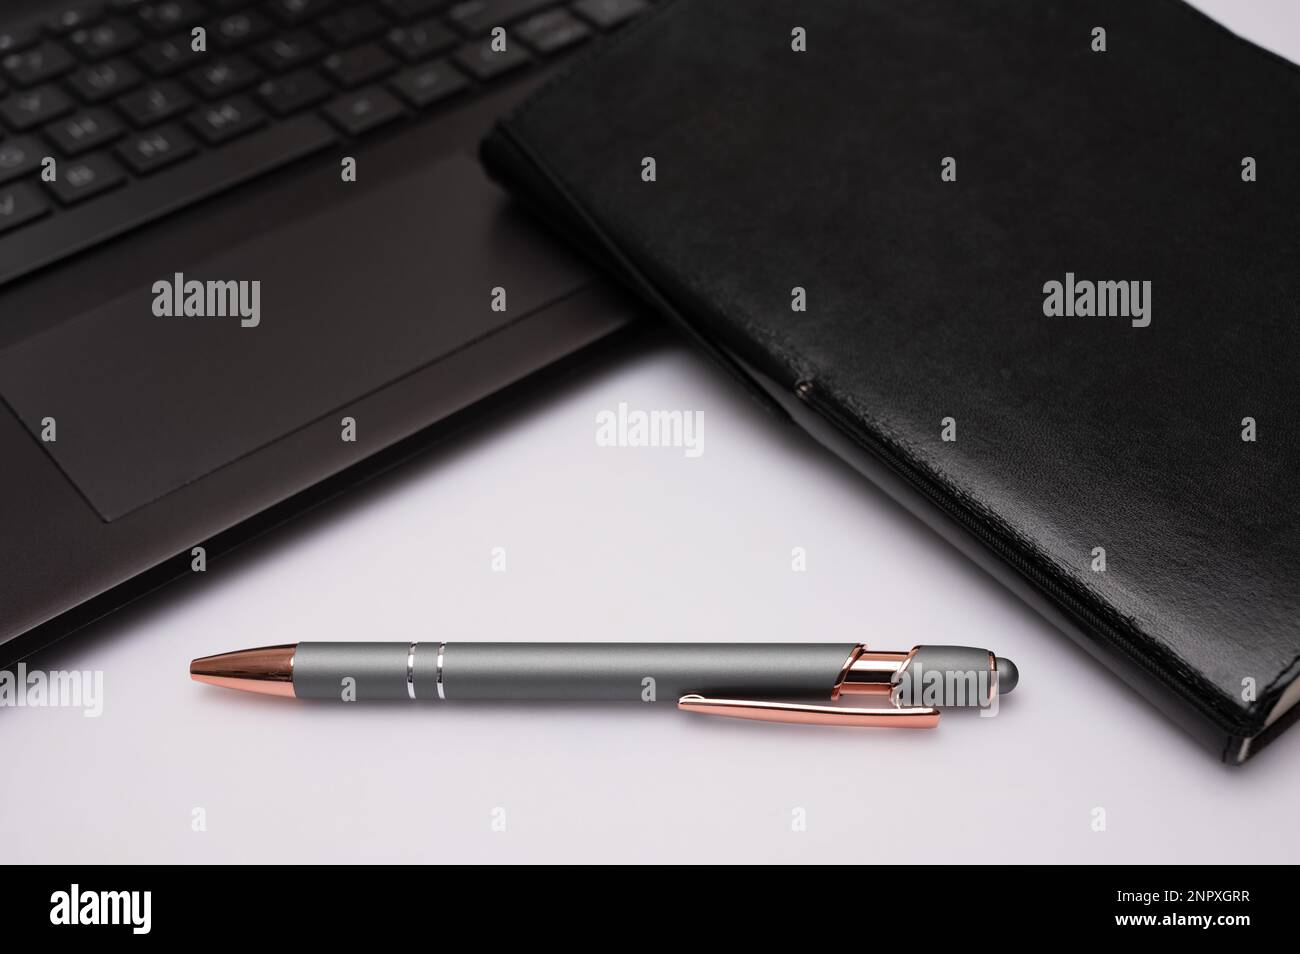 Ein schwarzes Notizbuch mit einem Stift und einem Computer auf einem Desktop, das ein Gefühl für ein Heimbüro oder kreatives Schreiben vermittelt. Stockfoto